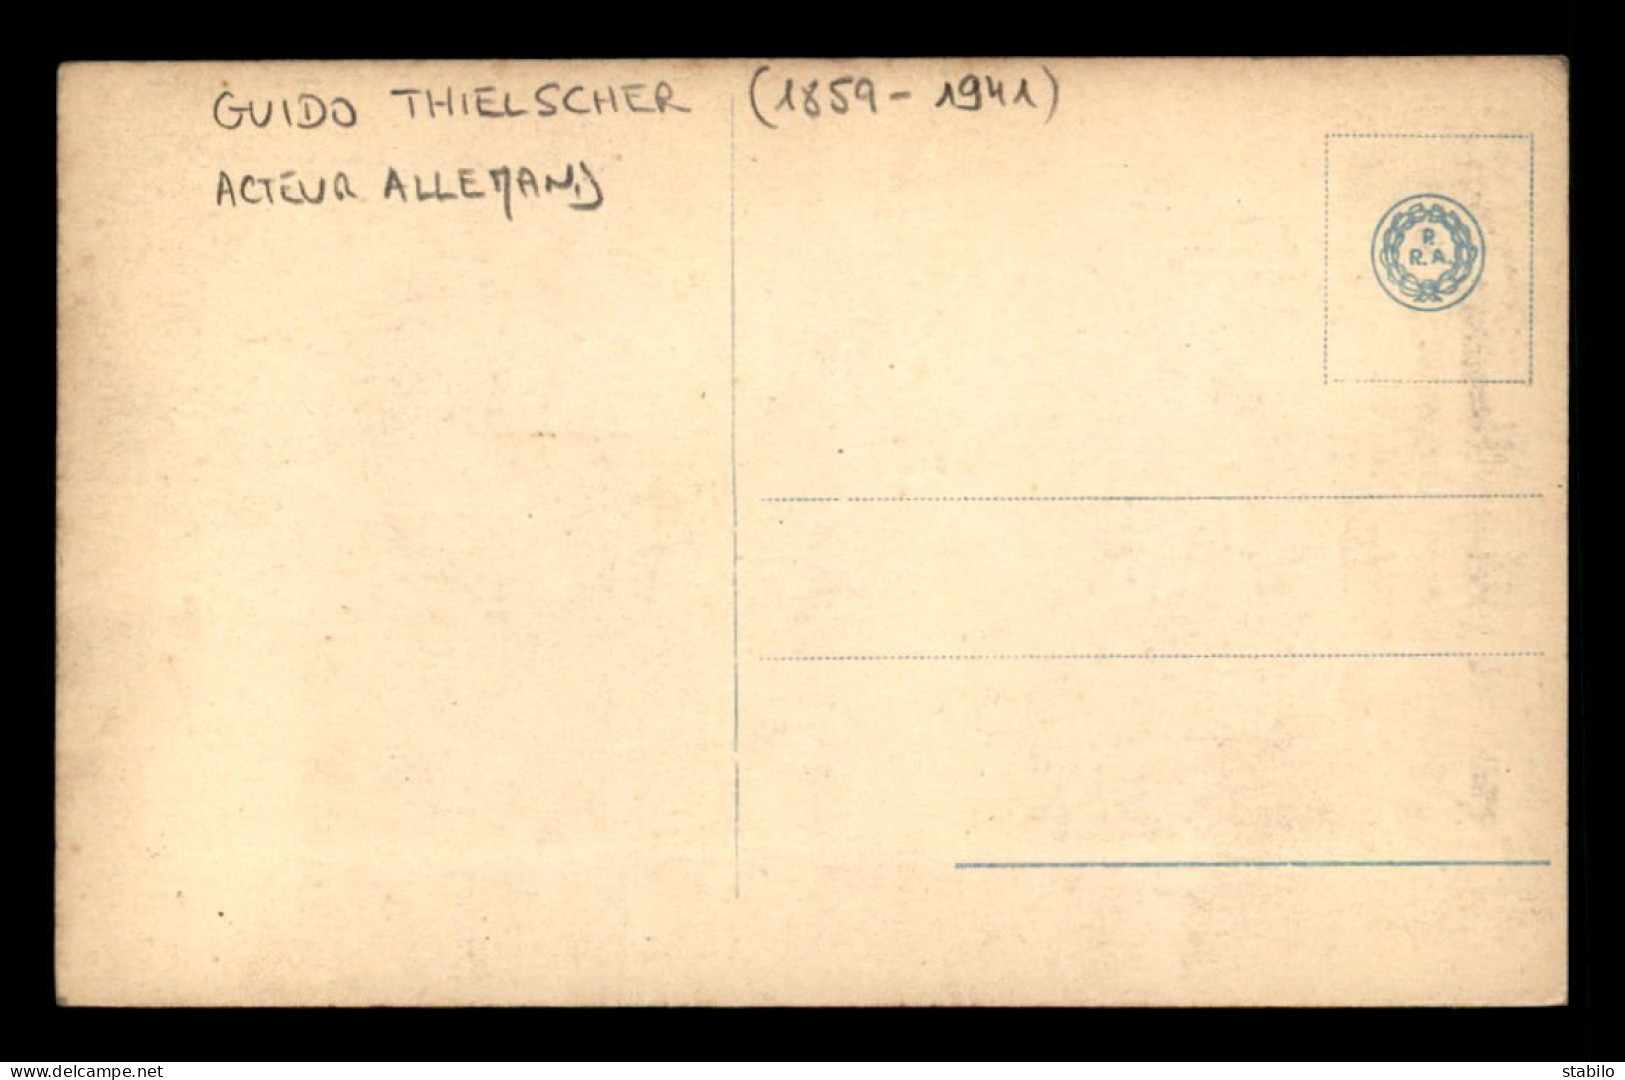 ARTISTES - GUIDO THIELSCHER (1859-1941) - ACTEUR ALLEMAND - Artistas